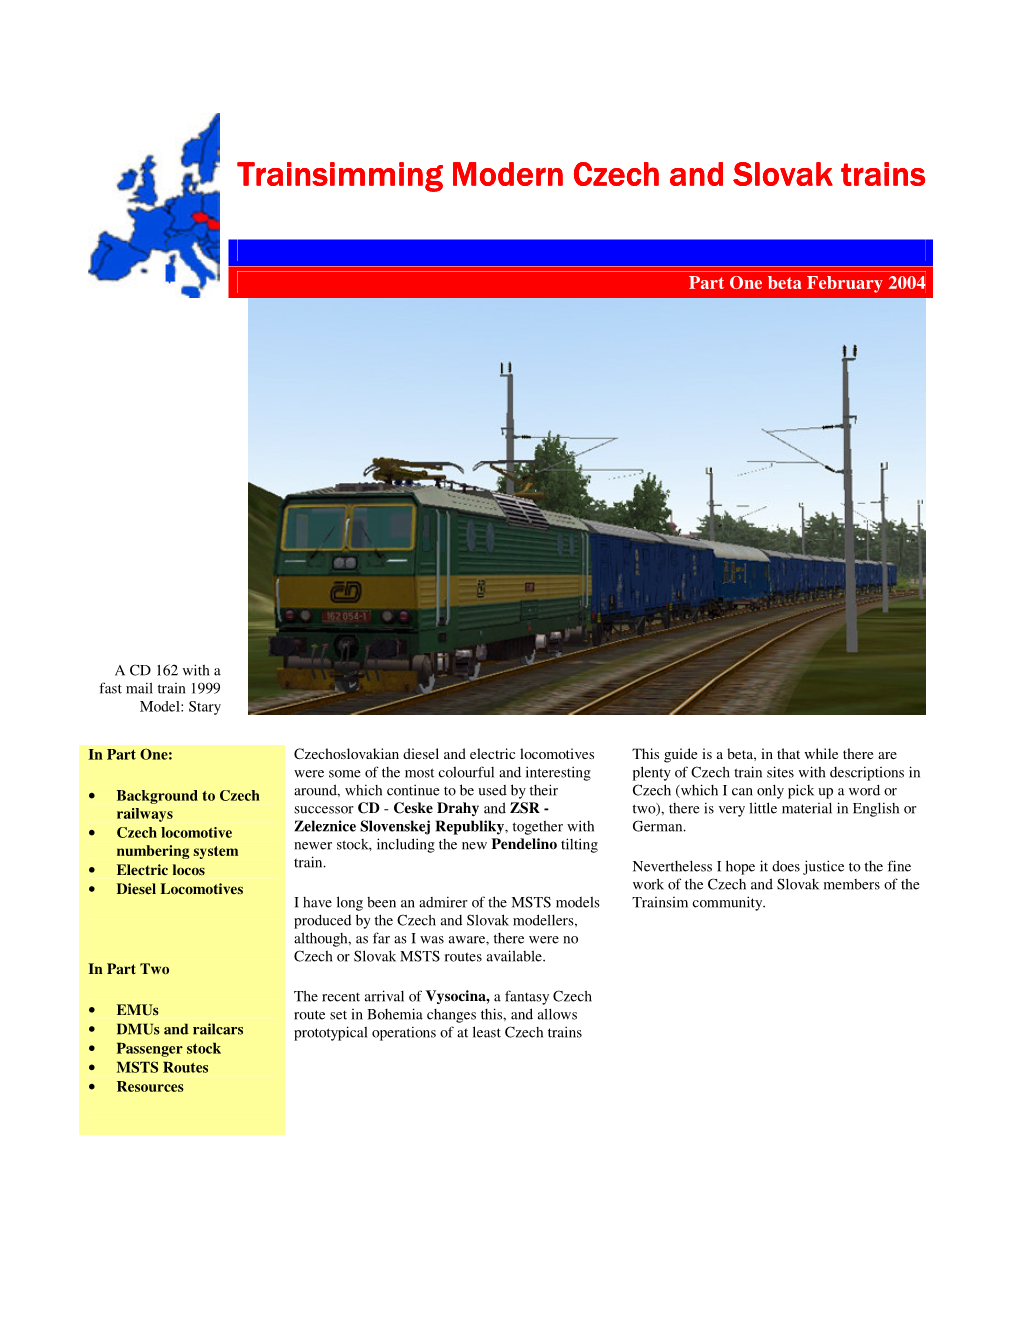 Trainsimming Modern Czech and Slovak Trains Trainsimming Modern